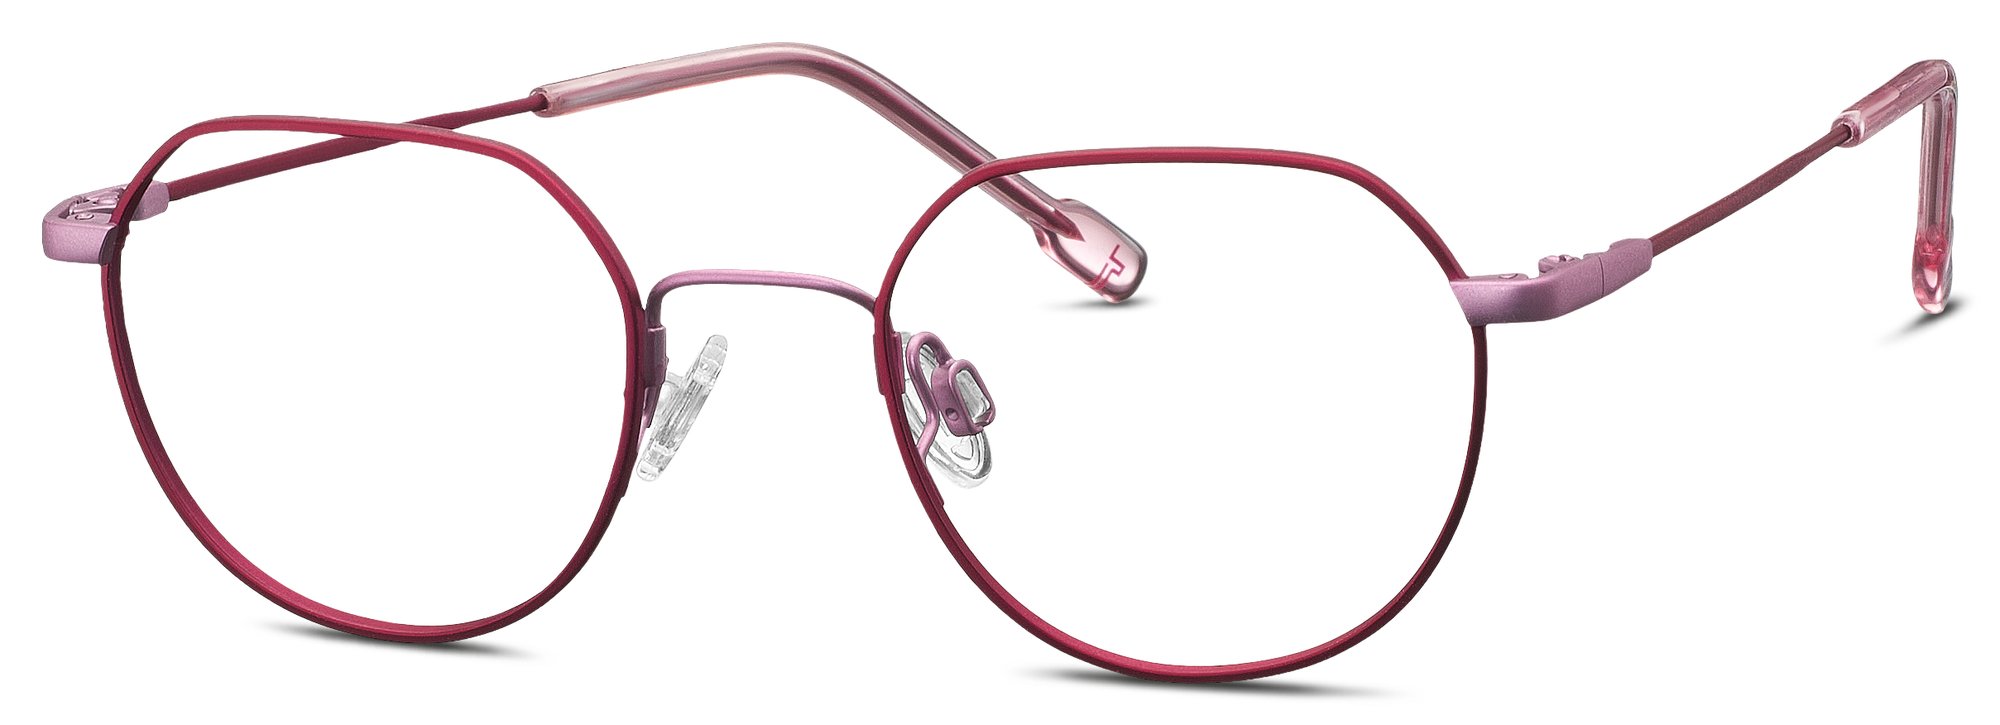 Das Bild zeigt die Korrektionsbrille 830136 50 von der Marke Titanflex Kids in rot/rosa.